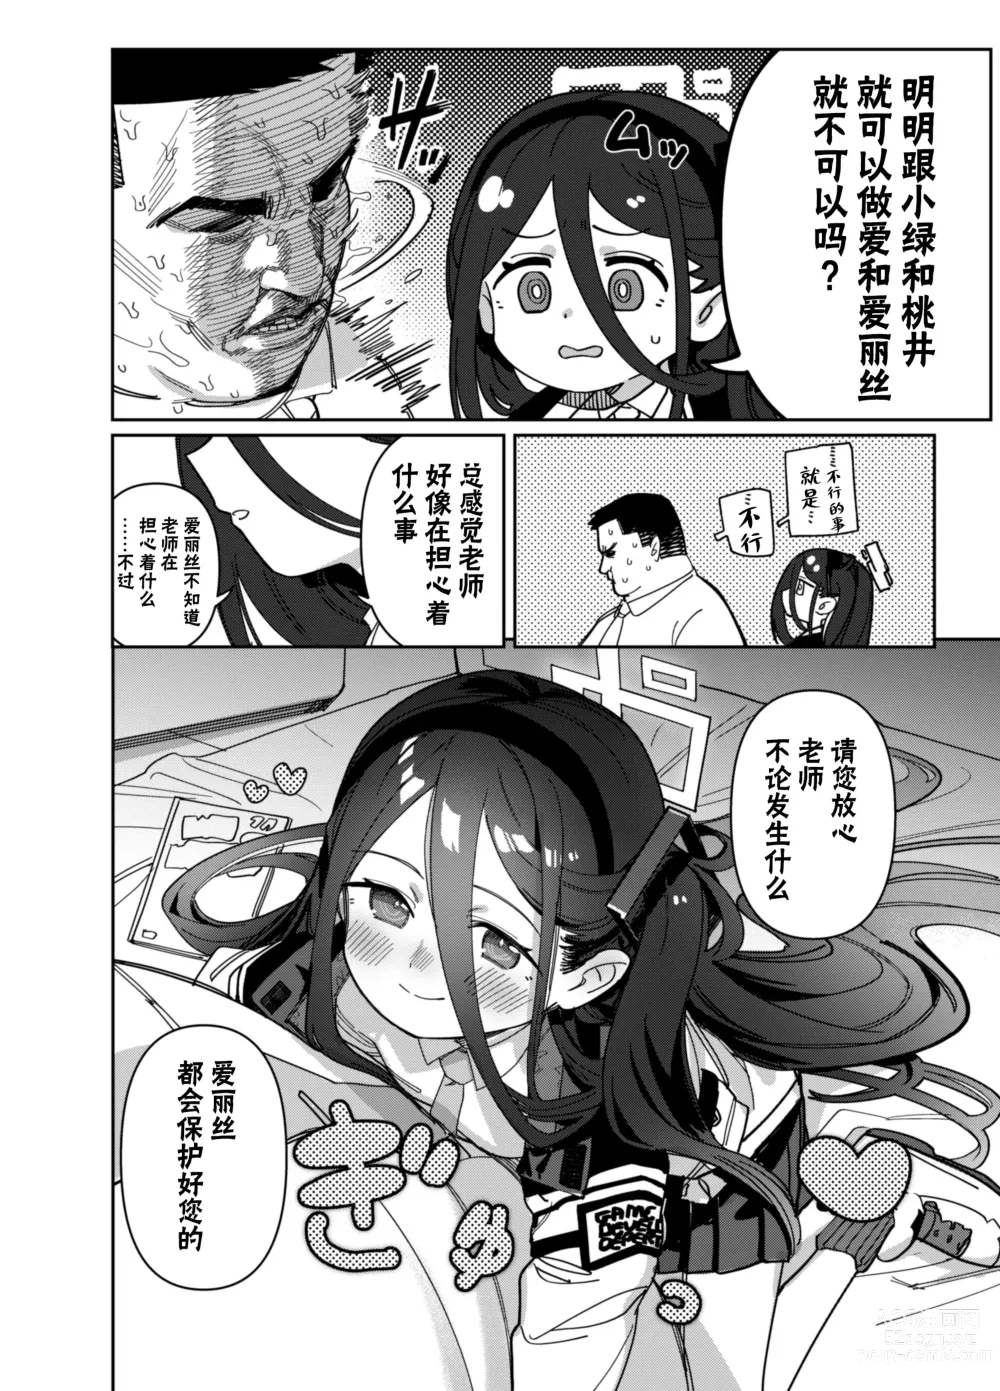 Page 7 of doujinshi 由于老师太弱了 爱丽丝来保护好老师!